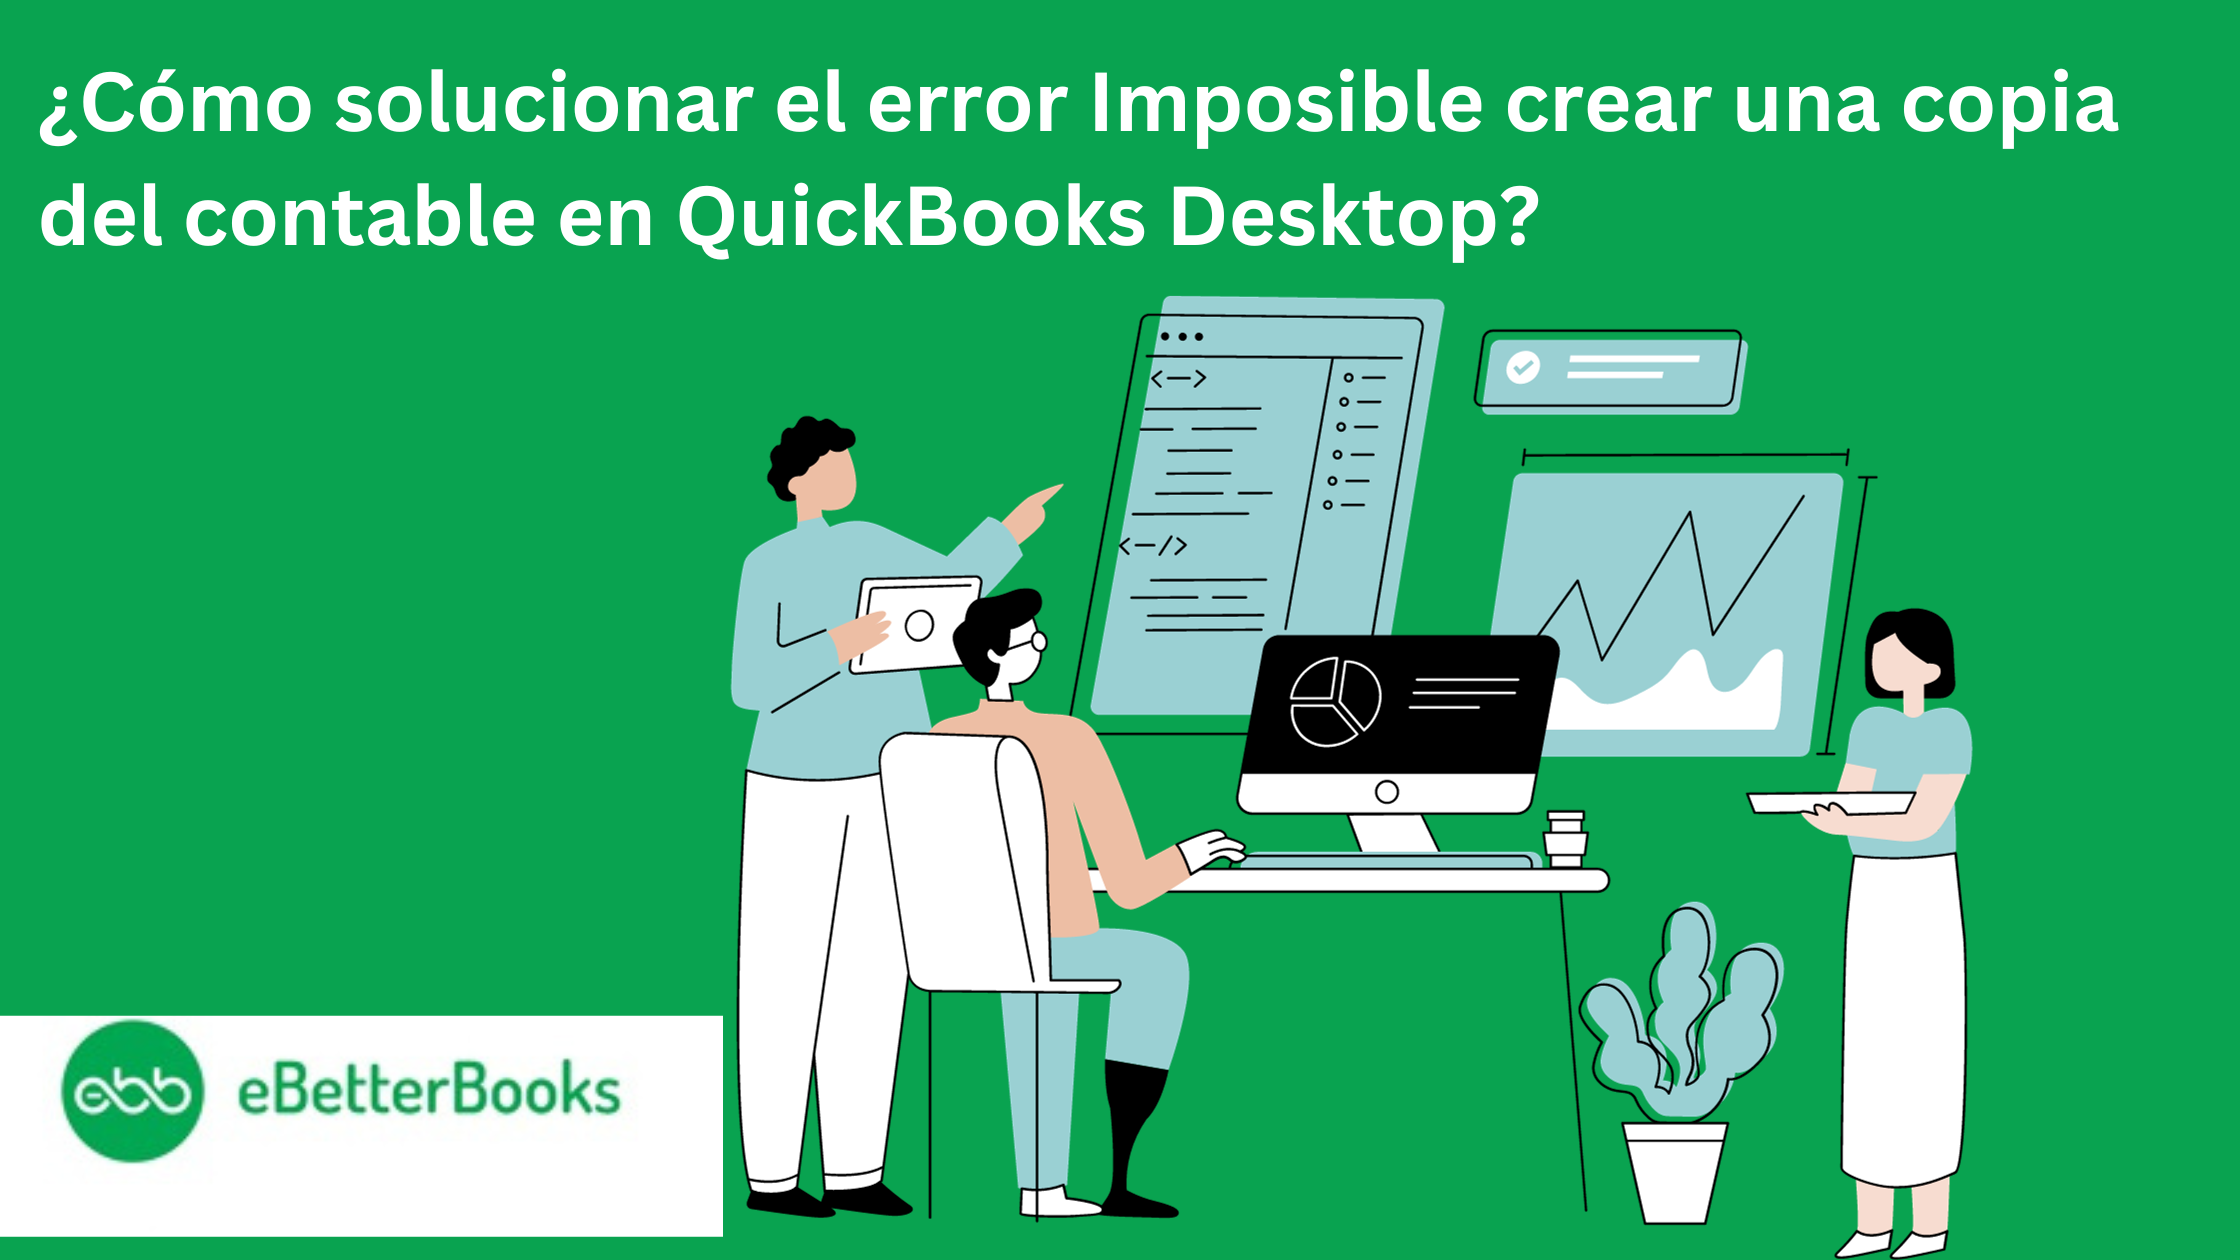 ¿Cómo solucionar el error Imposible crear una copia del contable en QuickBooks Desktop?